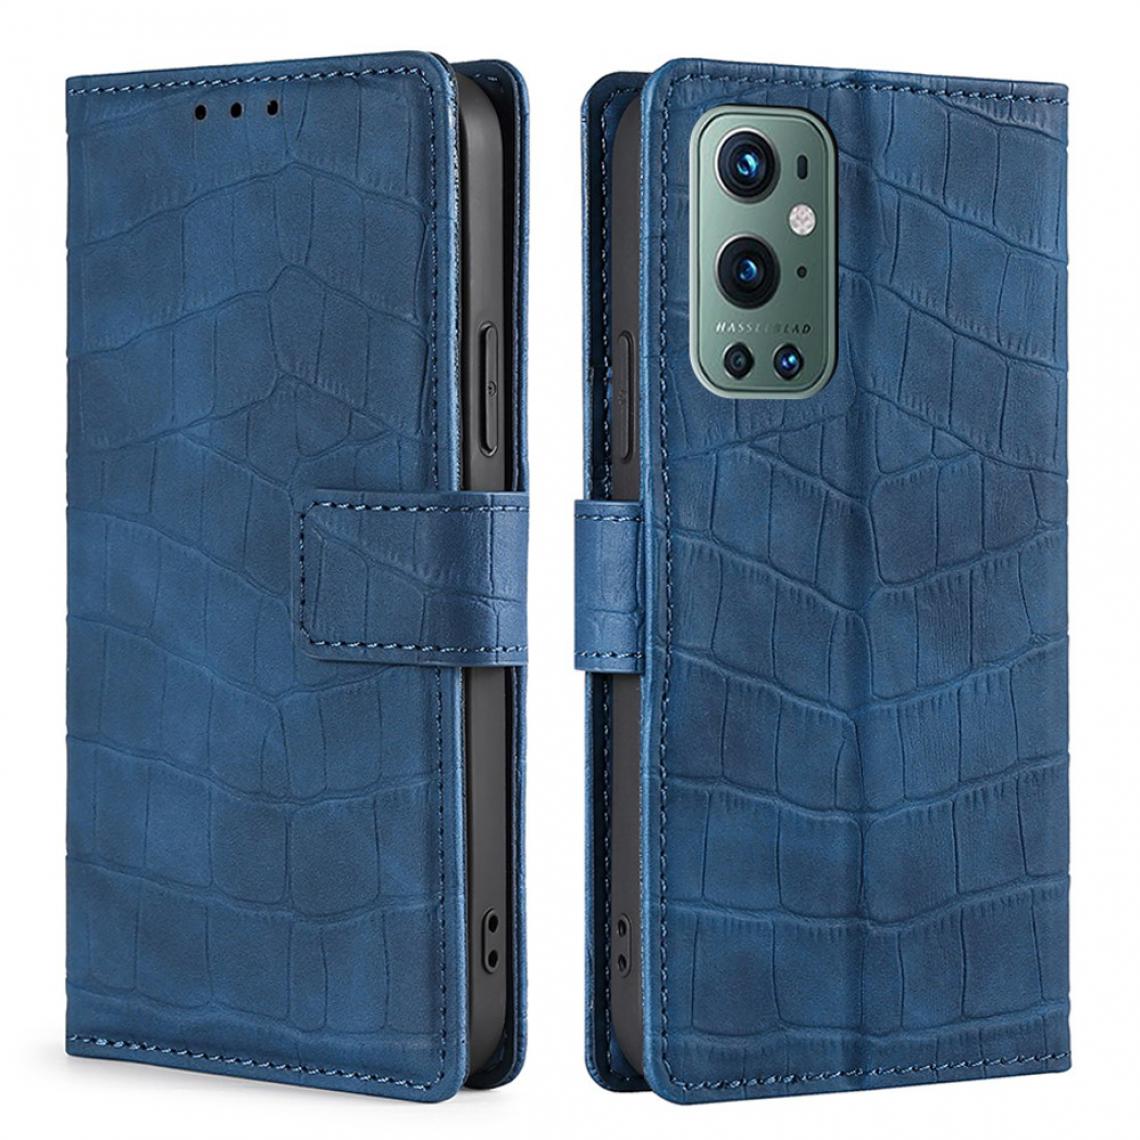 Other - Etui en PU Texture Crocodile avec support bleu pour votre OnePlus 9 Pro - Coque, étui smartphone